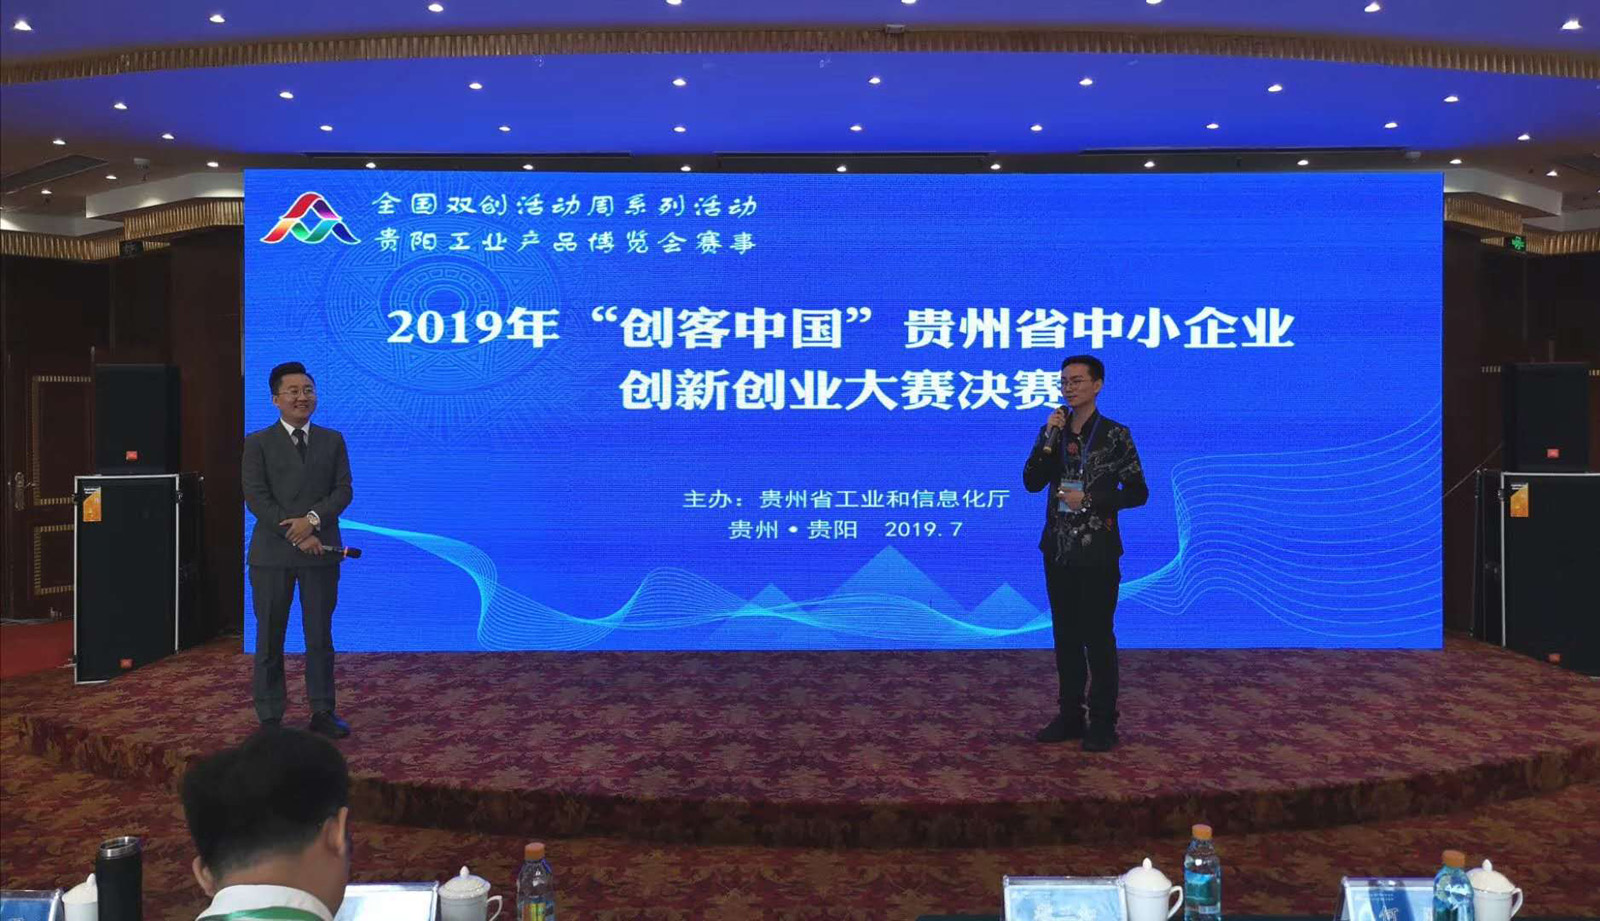 贵州省2019年向“创客”发放1422万元科技创新券